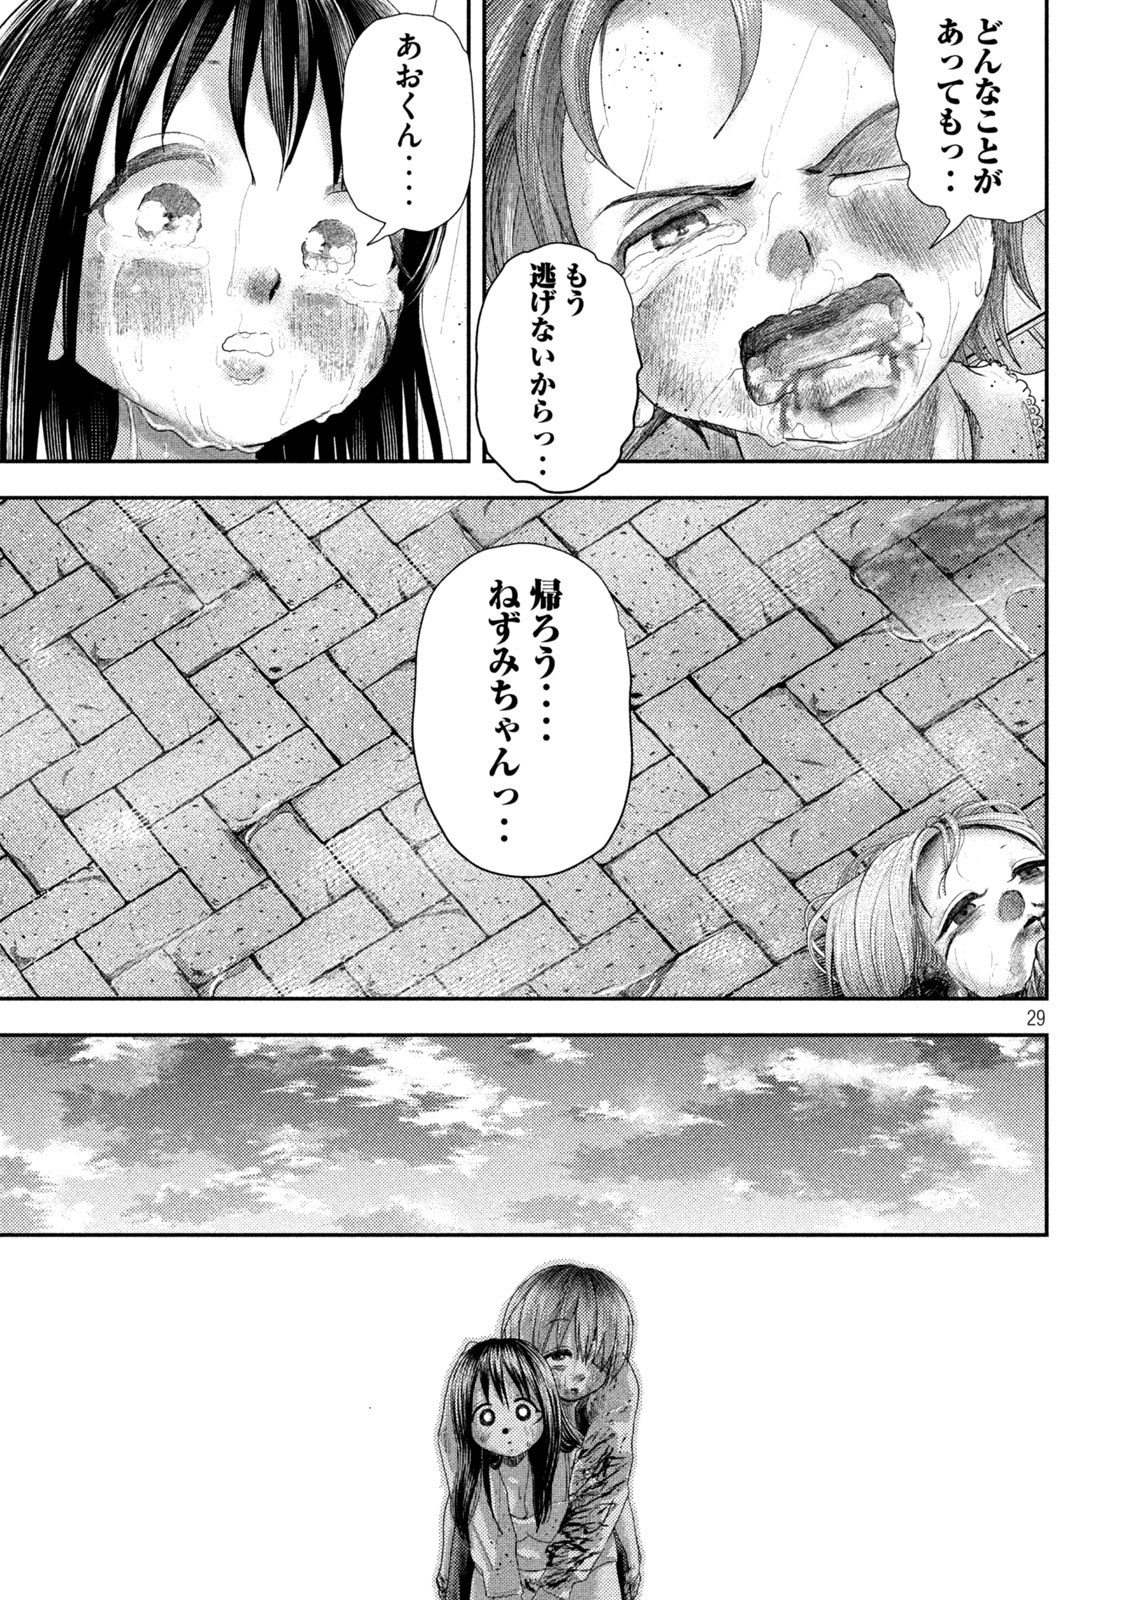 Nezumi no Koi - Chapter 26 - Page 29